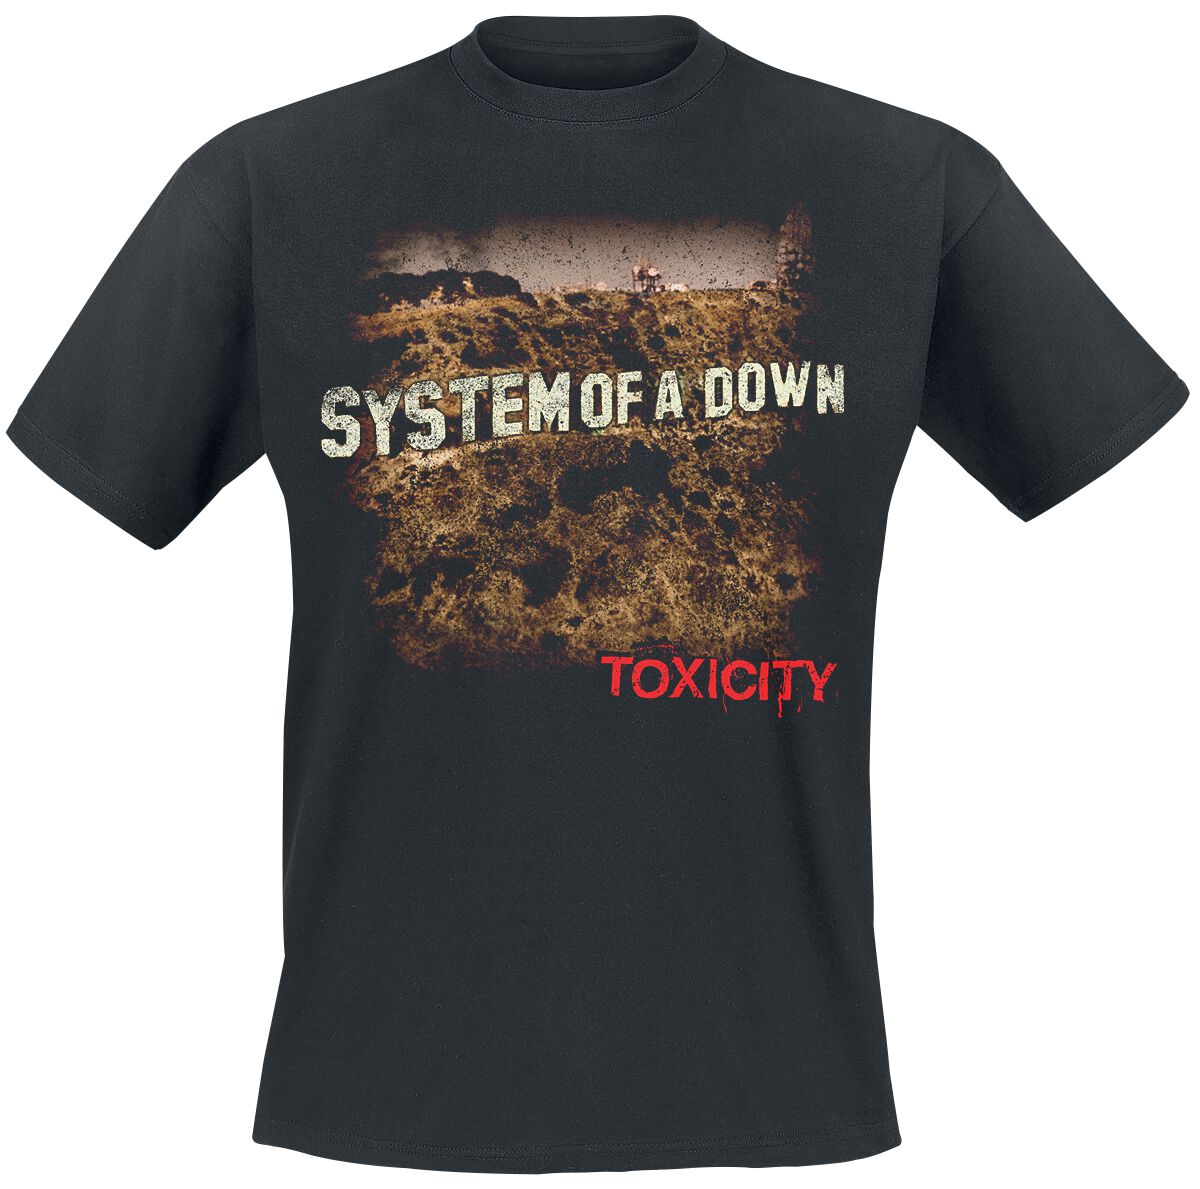 System Of A Down T-Shirt - Toxicity - S bis XXL - für Männer - Größe S - schwarz  - Lizenziertes Merchandise!